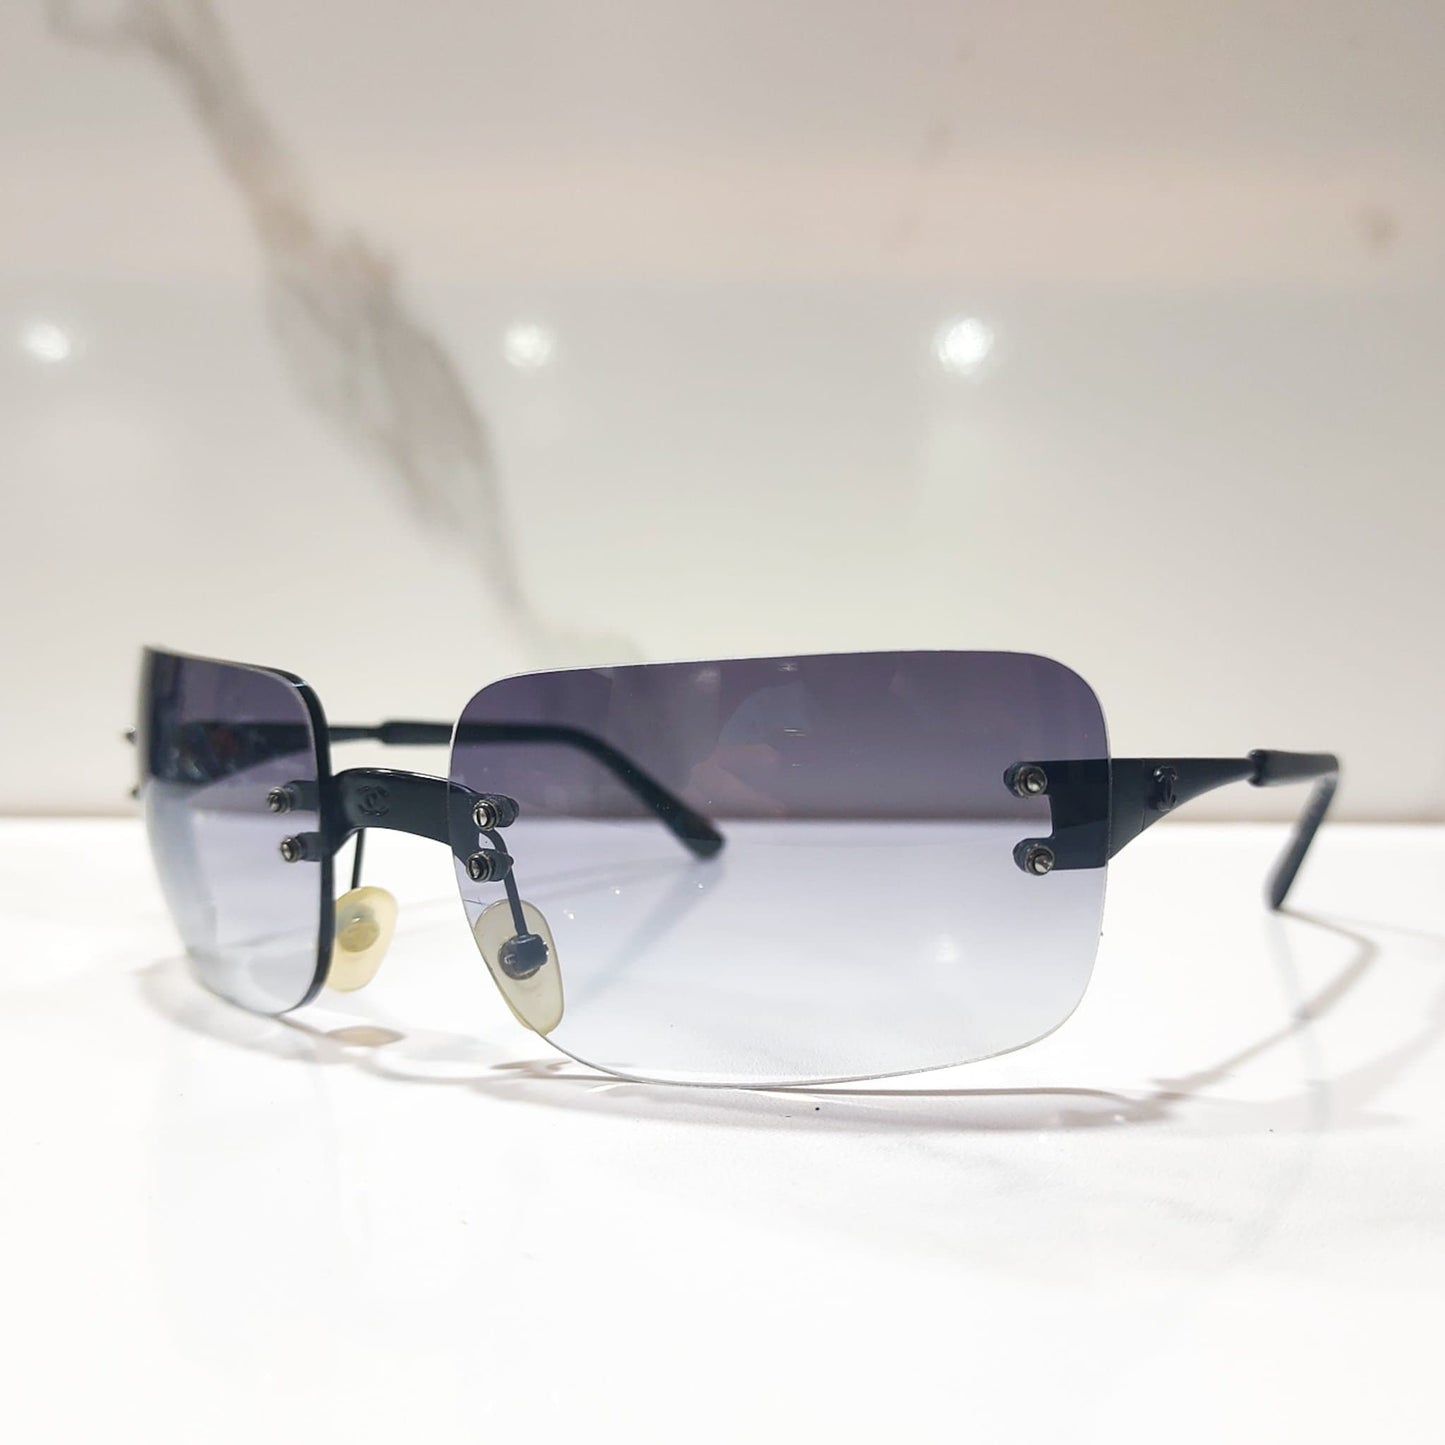 Occhiali da sole Chanel modello 4005 lunette brille y2k shades senza montatura